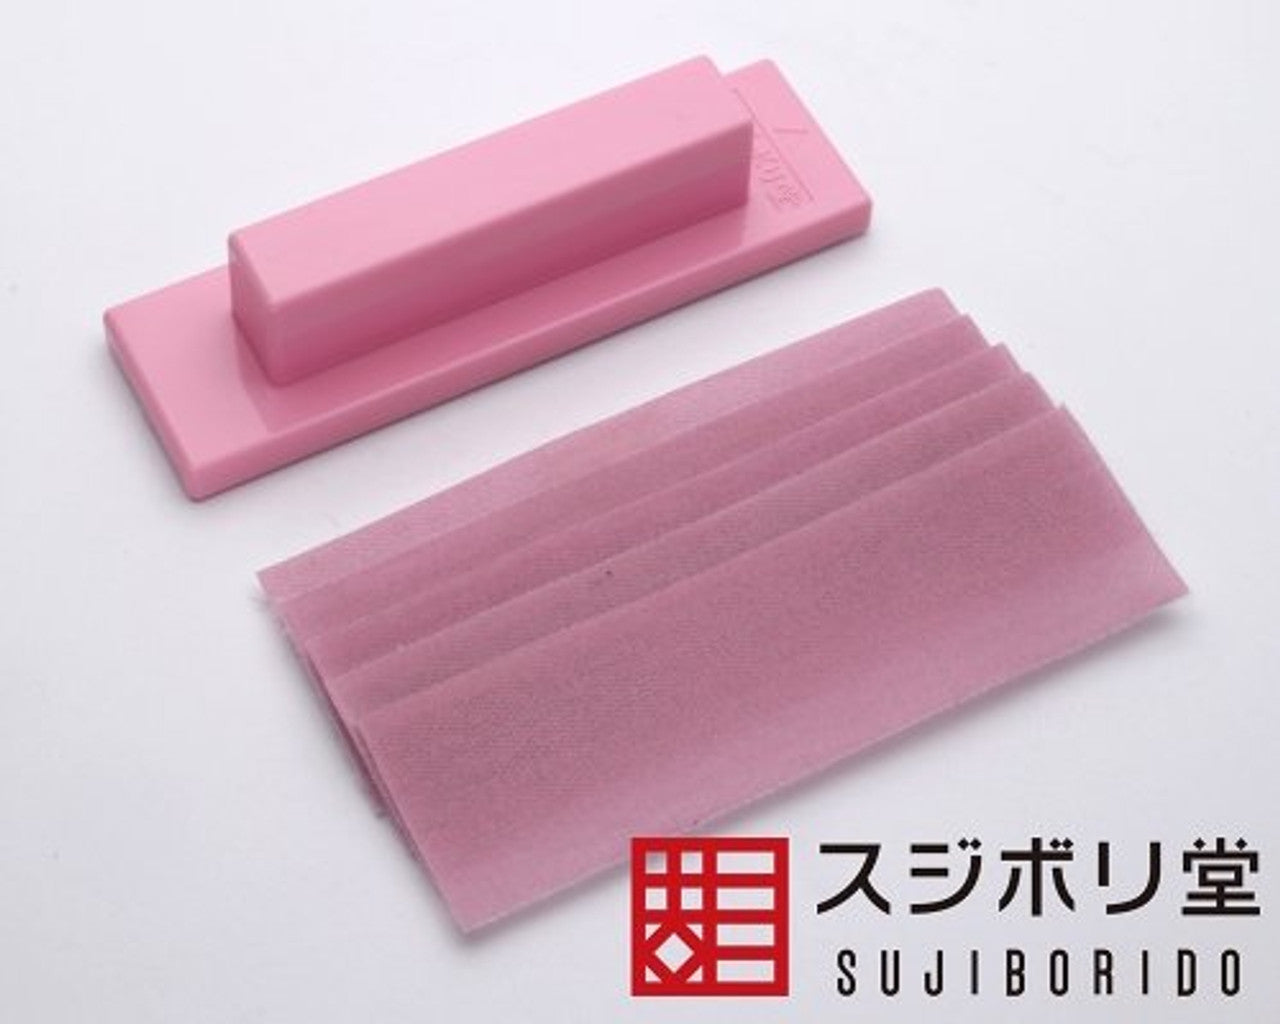 Sujiborido MAG050 Magic Holder for Magic File #1500 Pink (5pcs. Included) - BanzaiHobby